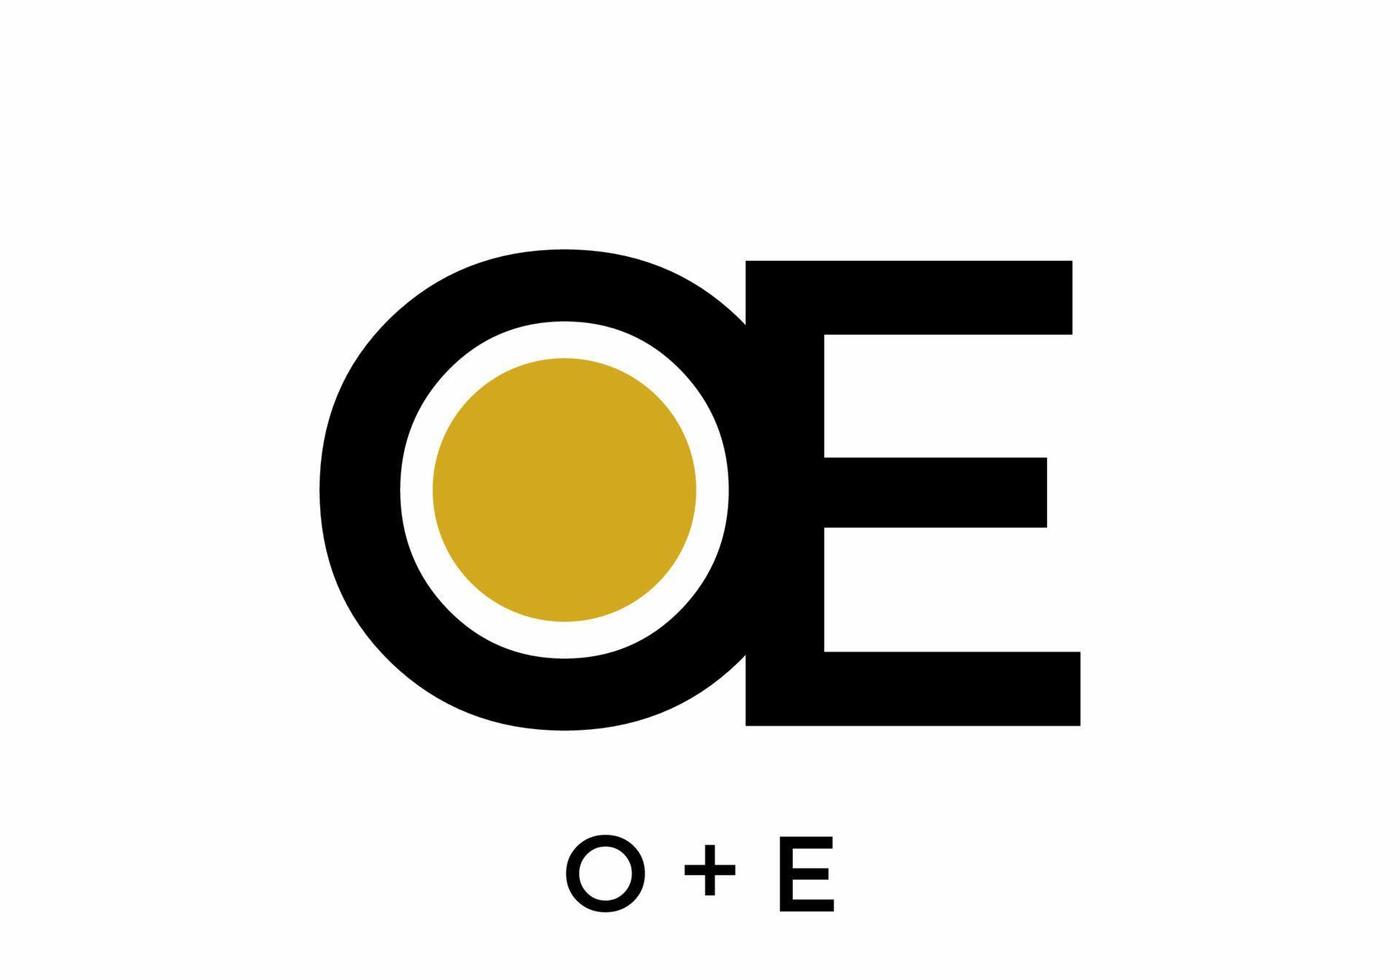 schwarzgoldene Farbe des oe-Anfangsbuchstabens vektor